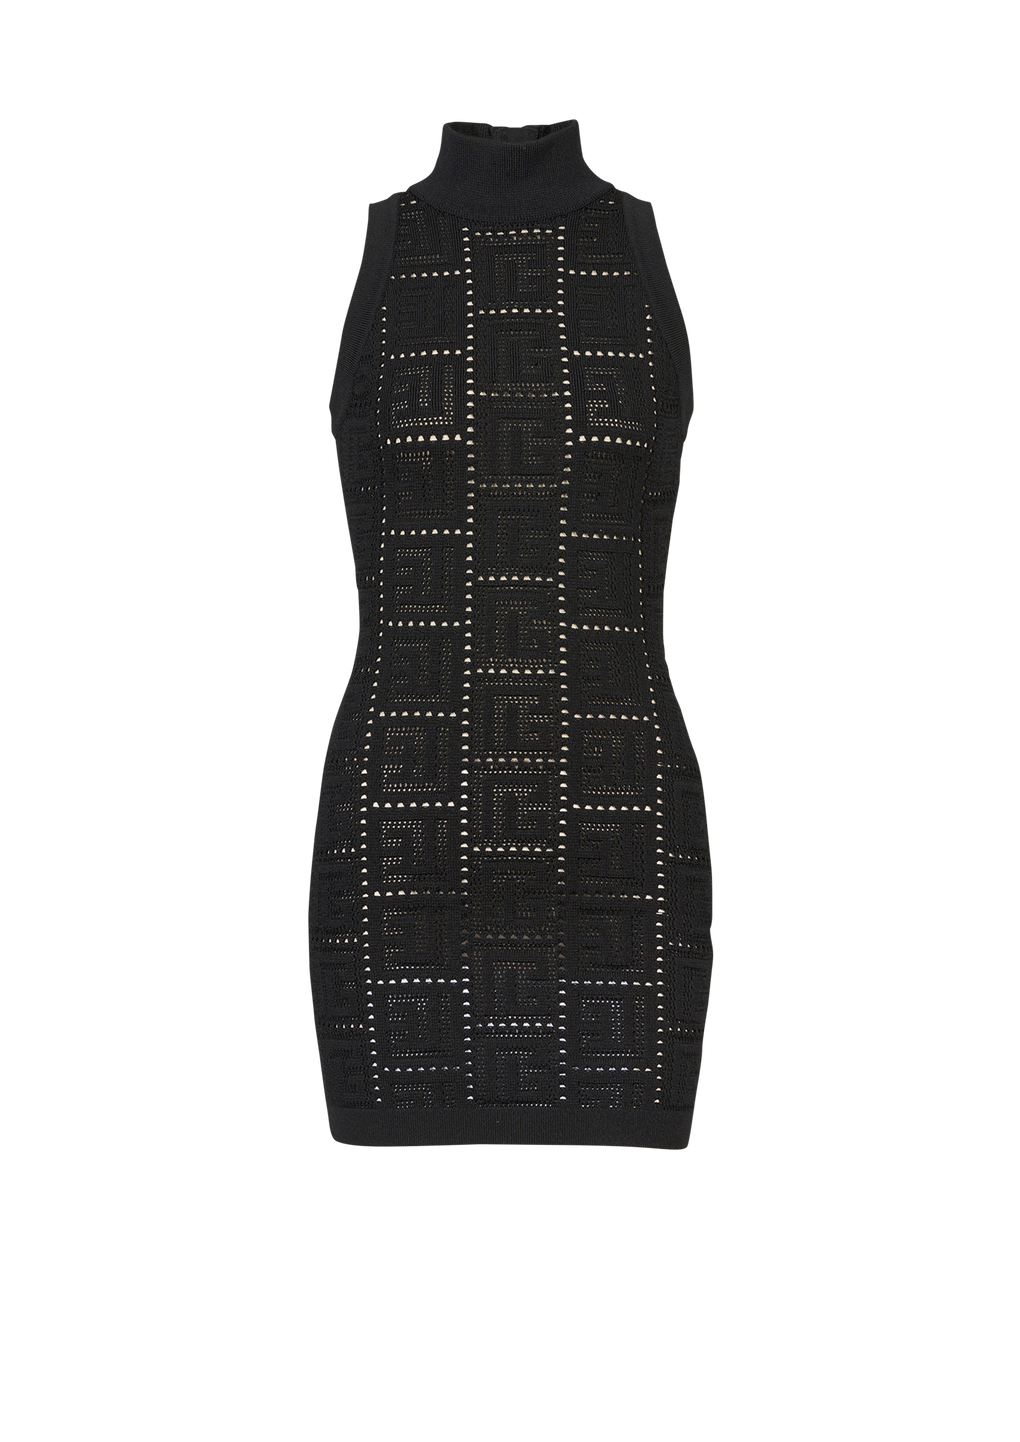 Kurzes Strickkleid im Öko-Design mit Balmain-Monogramm, schwarz, hi-res